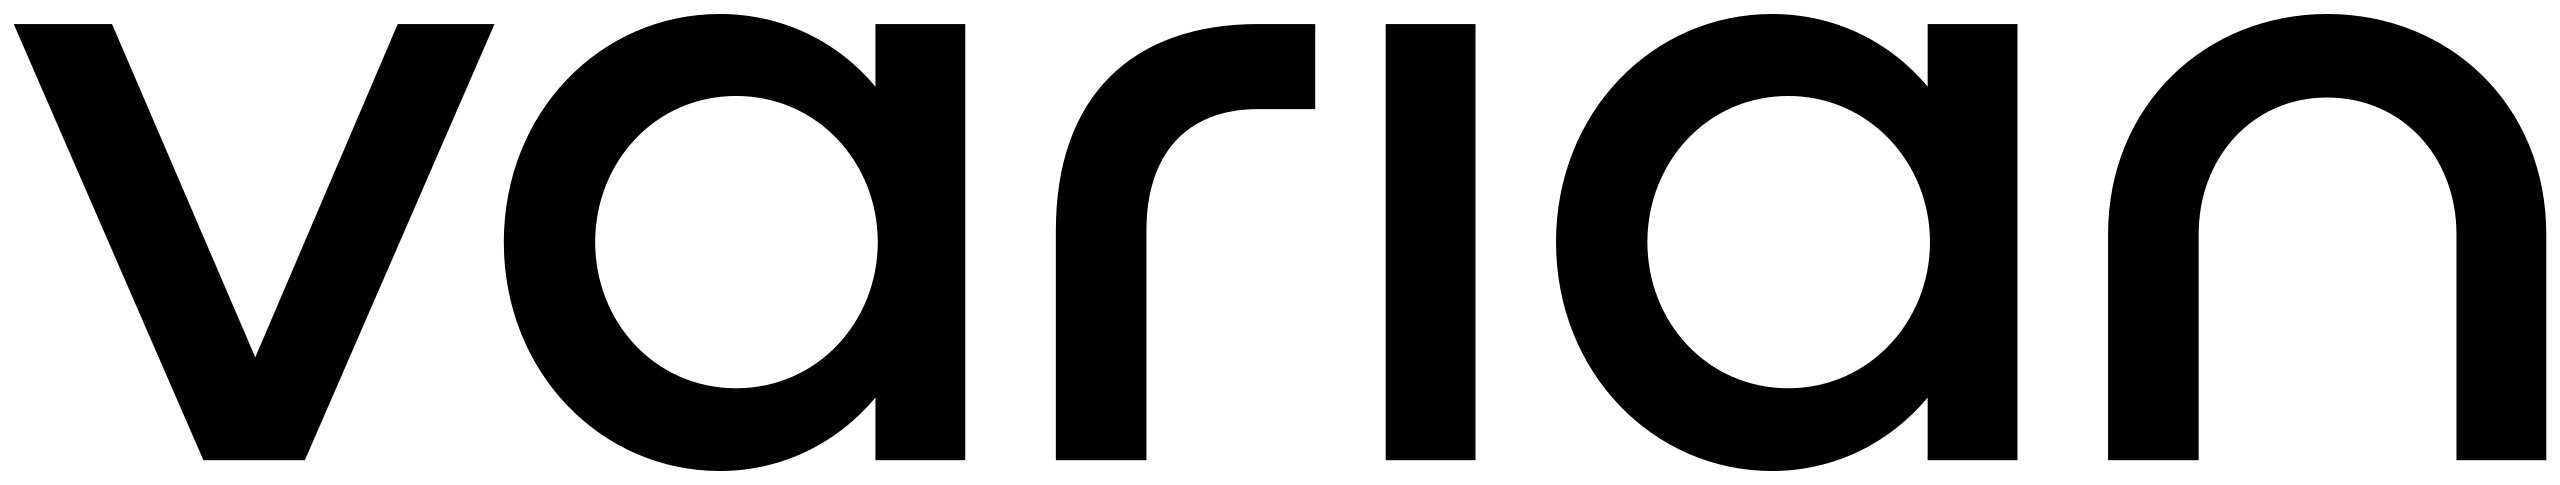 Varian Medical Systems Logo.svg